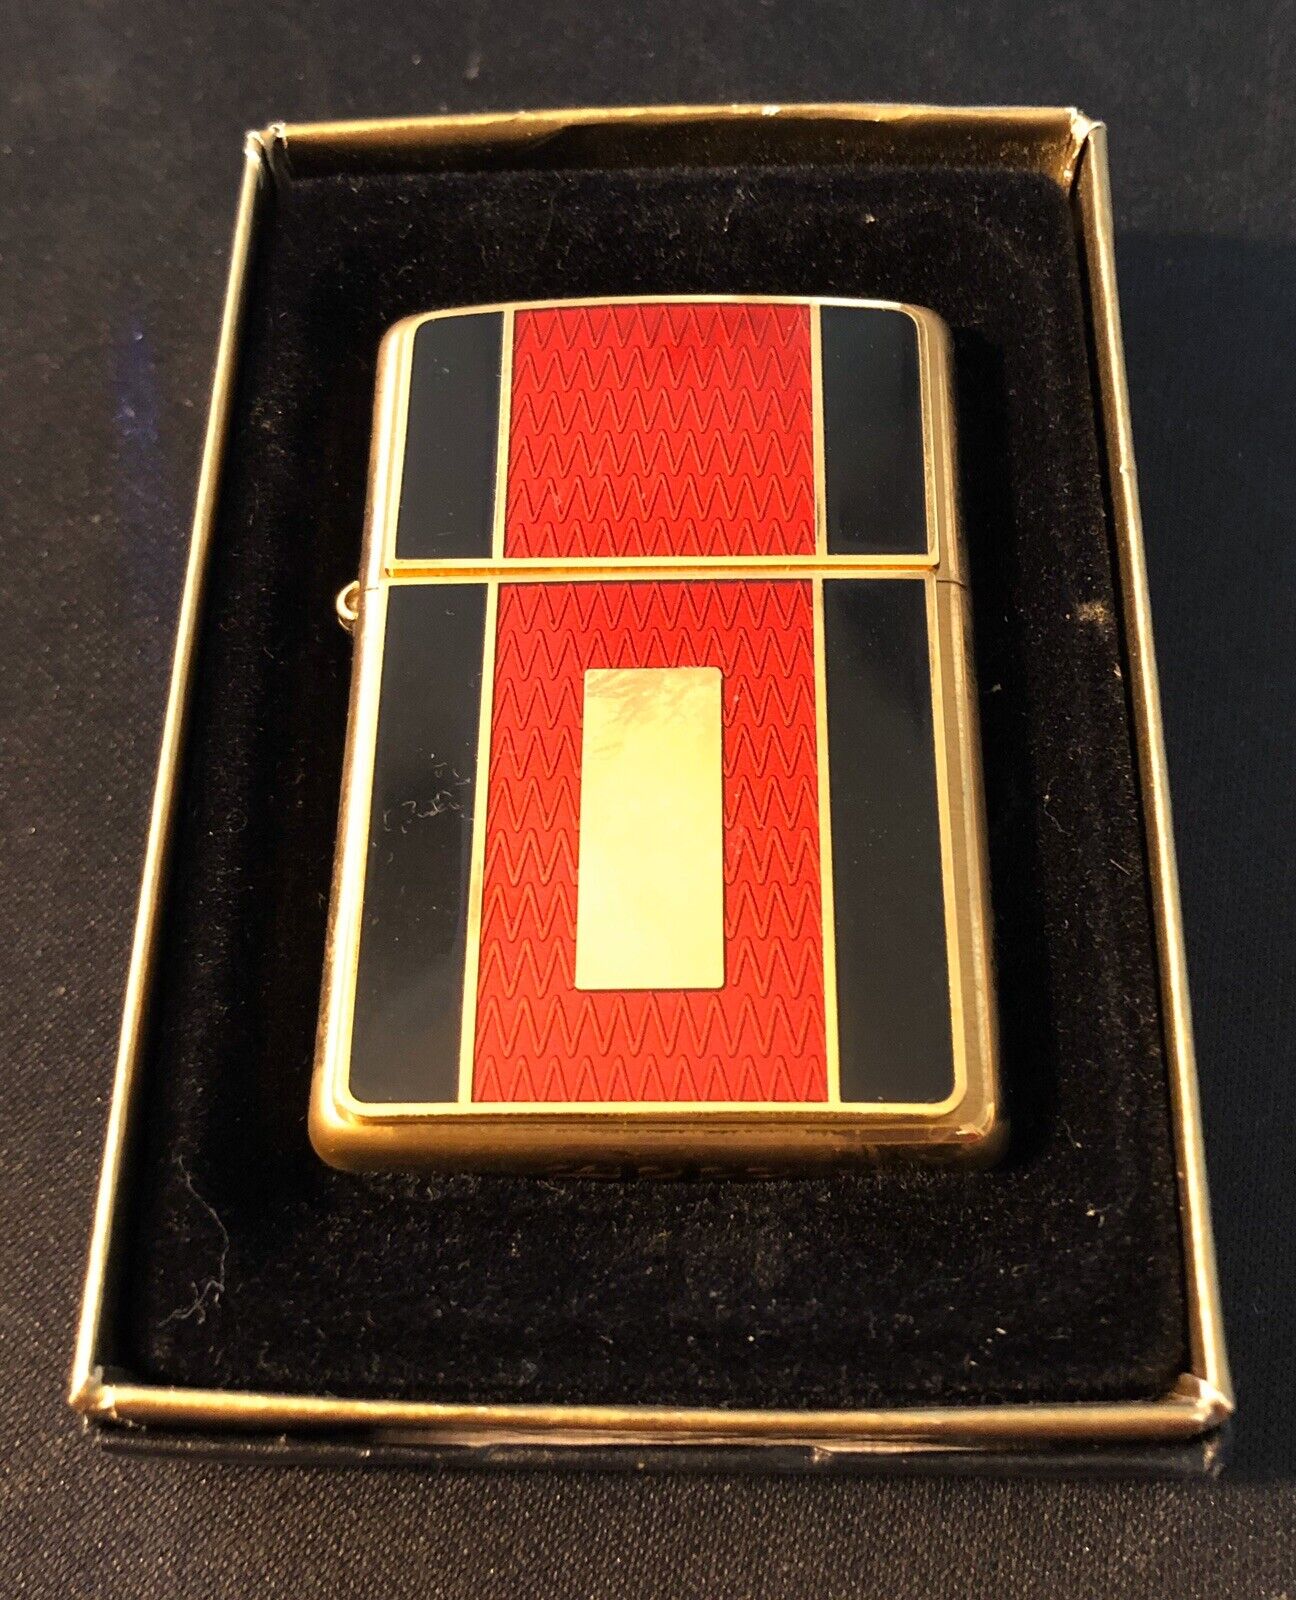 Zippo Lighter Red Black And Gold Color Emblem 2003 Design